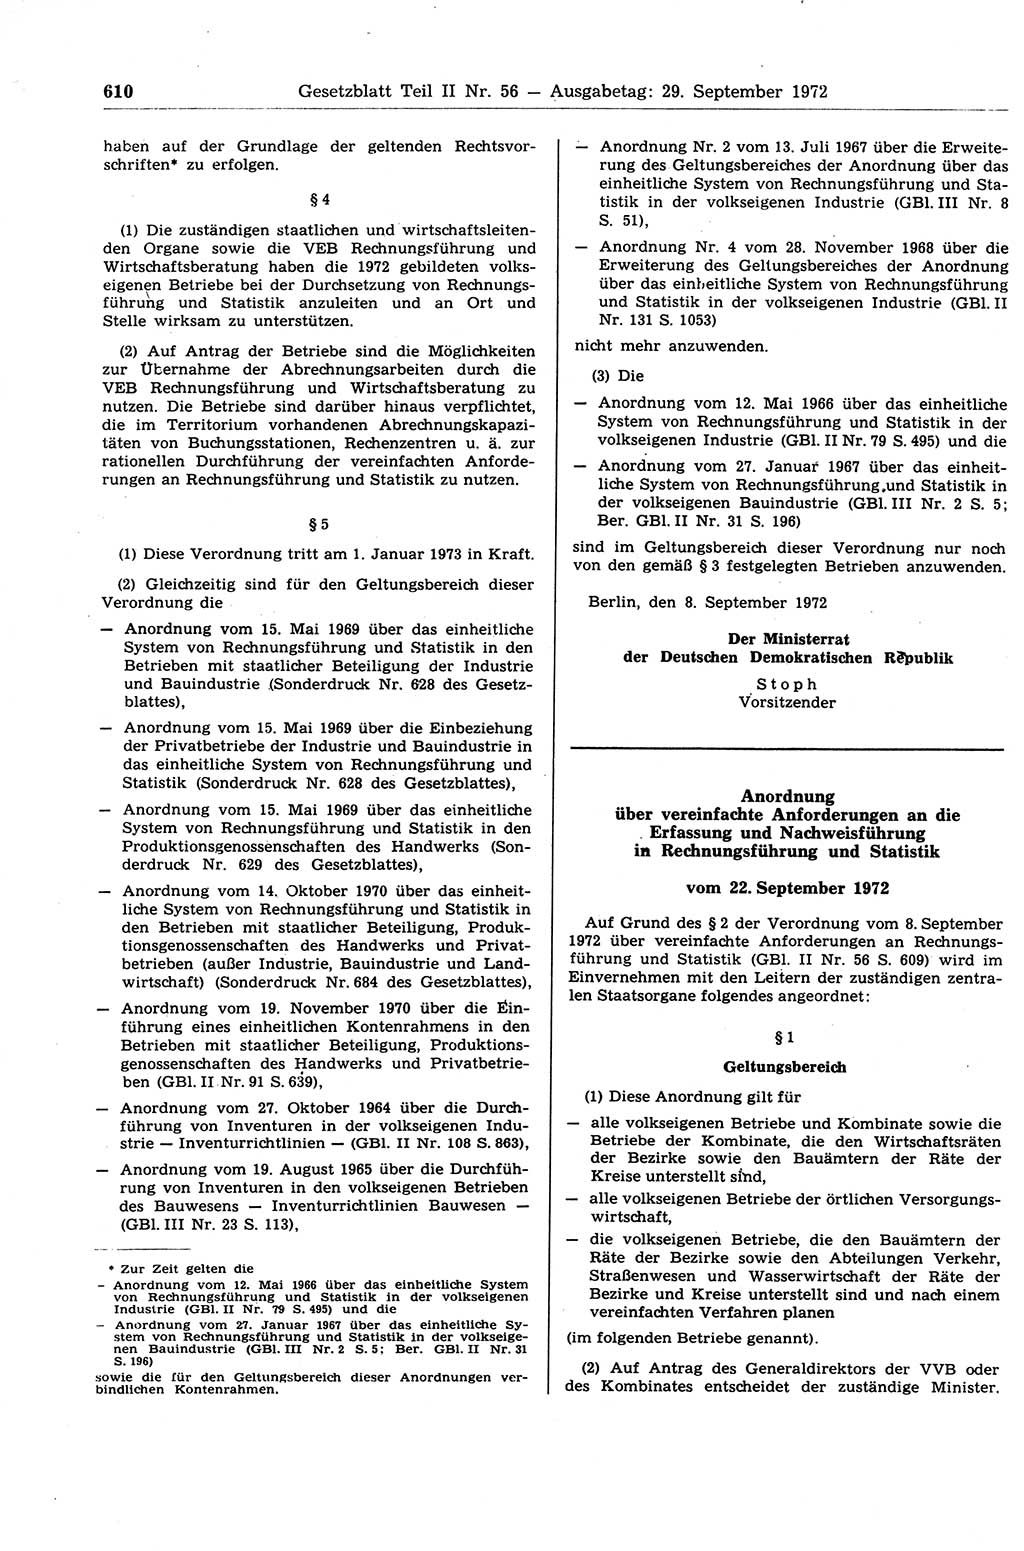 Gesetzblatt (GBl.) der Deutschen Demokratischen Republik (DDR) Teil ⅠⅠ 1972, Seite 610 (GBl. DDR ⅠⅠ 1972, S. 610)